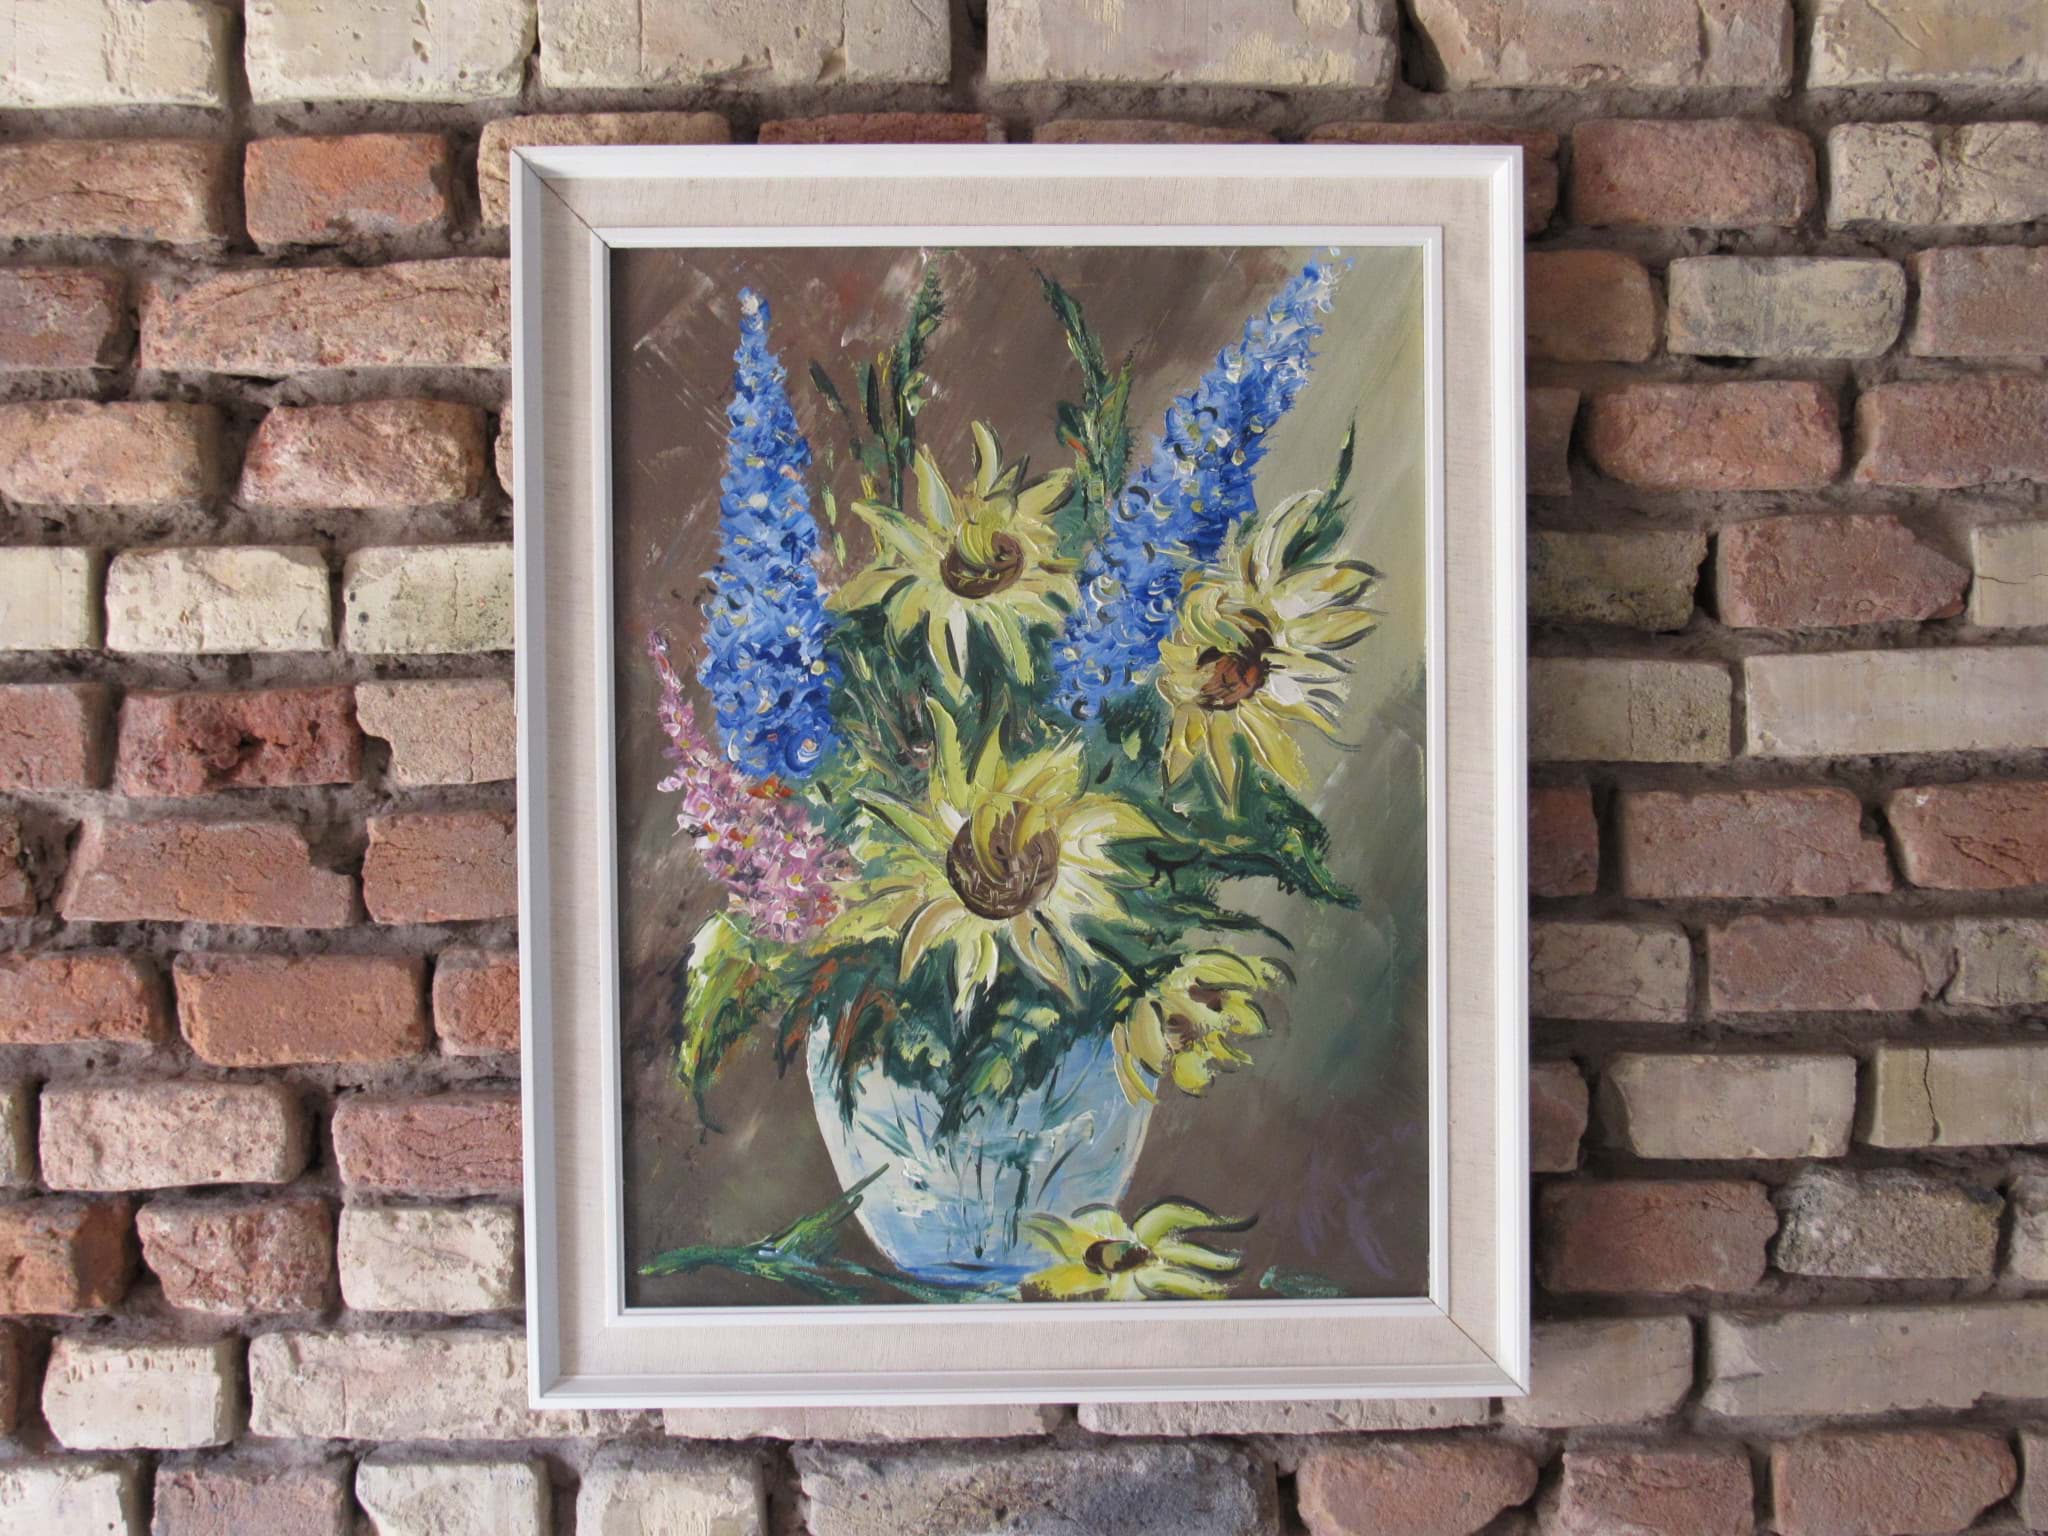 Obraz Gemälde Blumenstillleben mit Sonnenblumen & Gladiolen, Öl auf Leinwand, unleserlich signiert